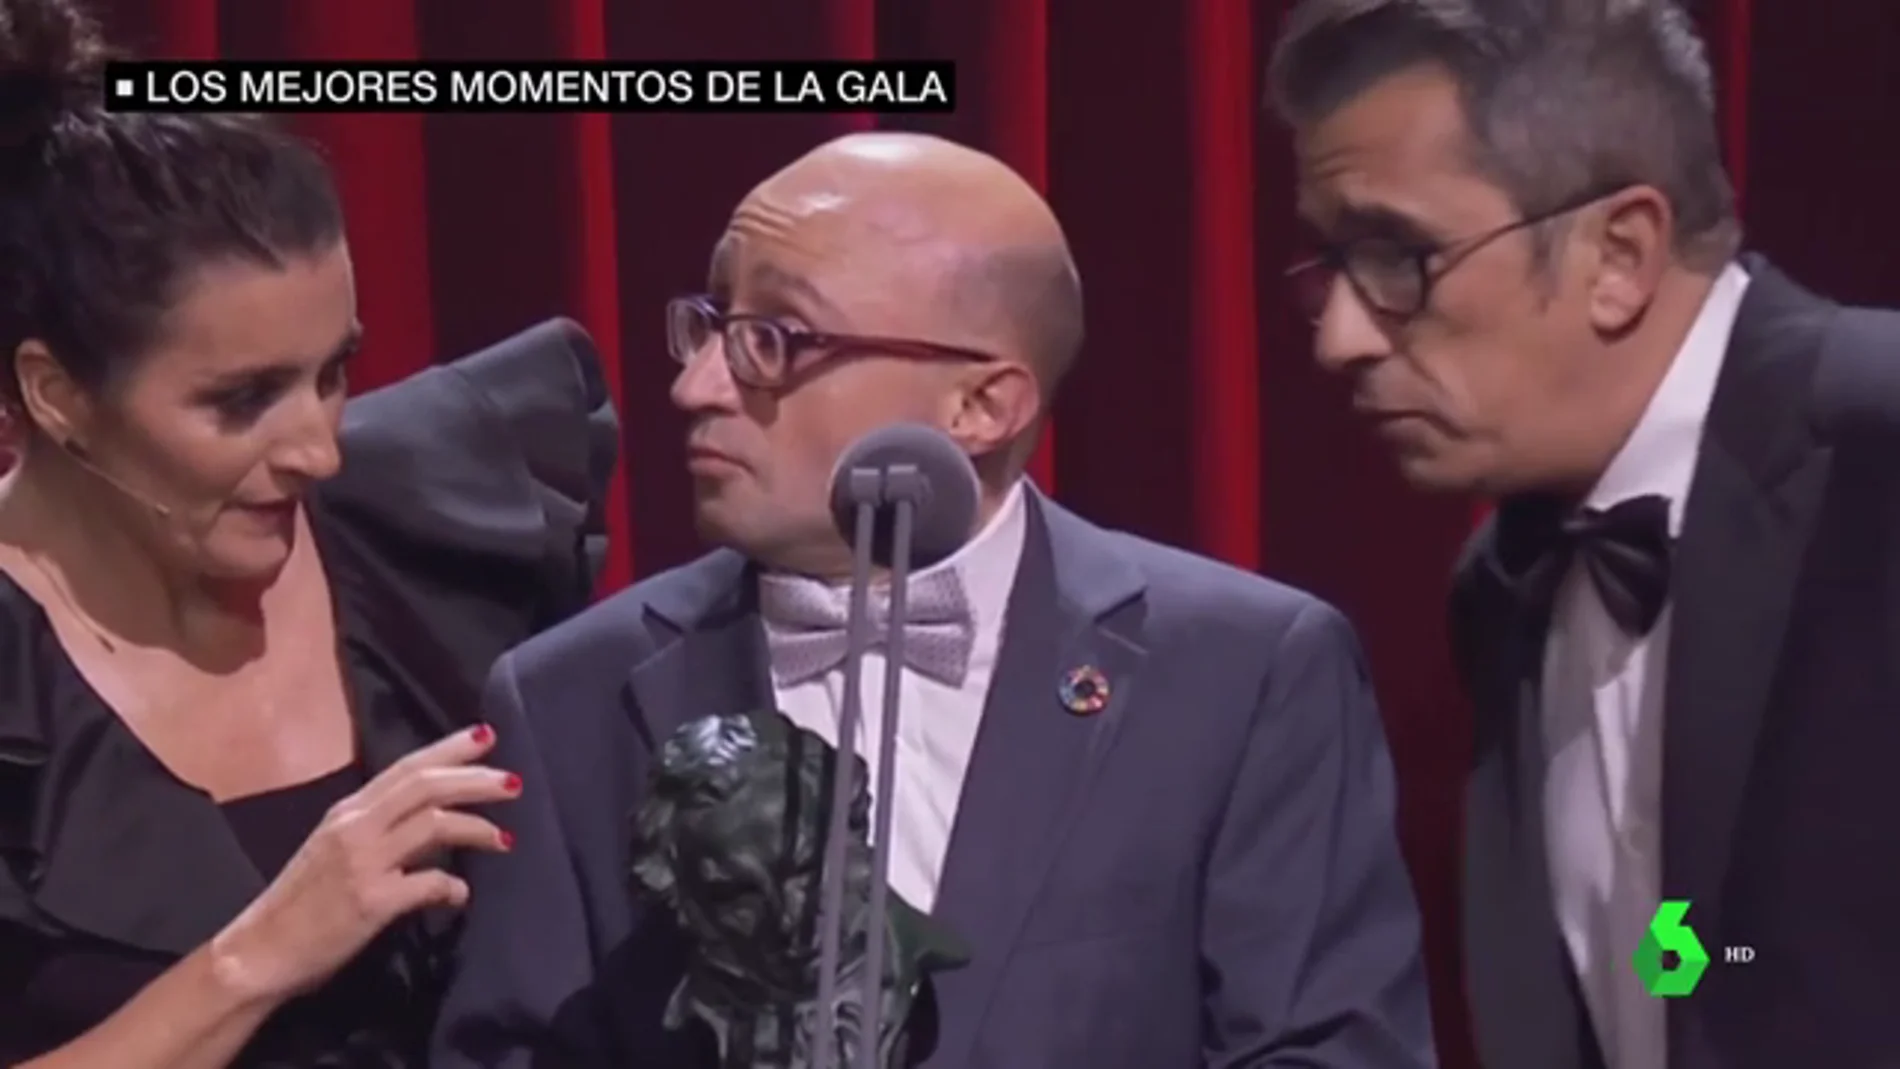 Los mejores momentos de la gala de los Goya 2020